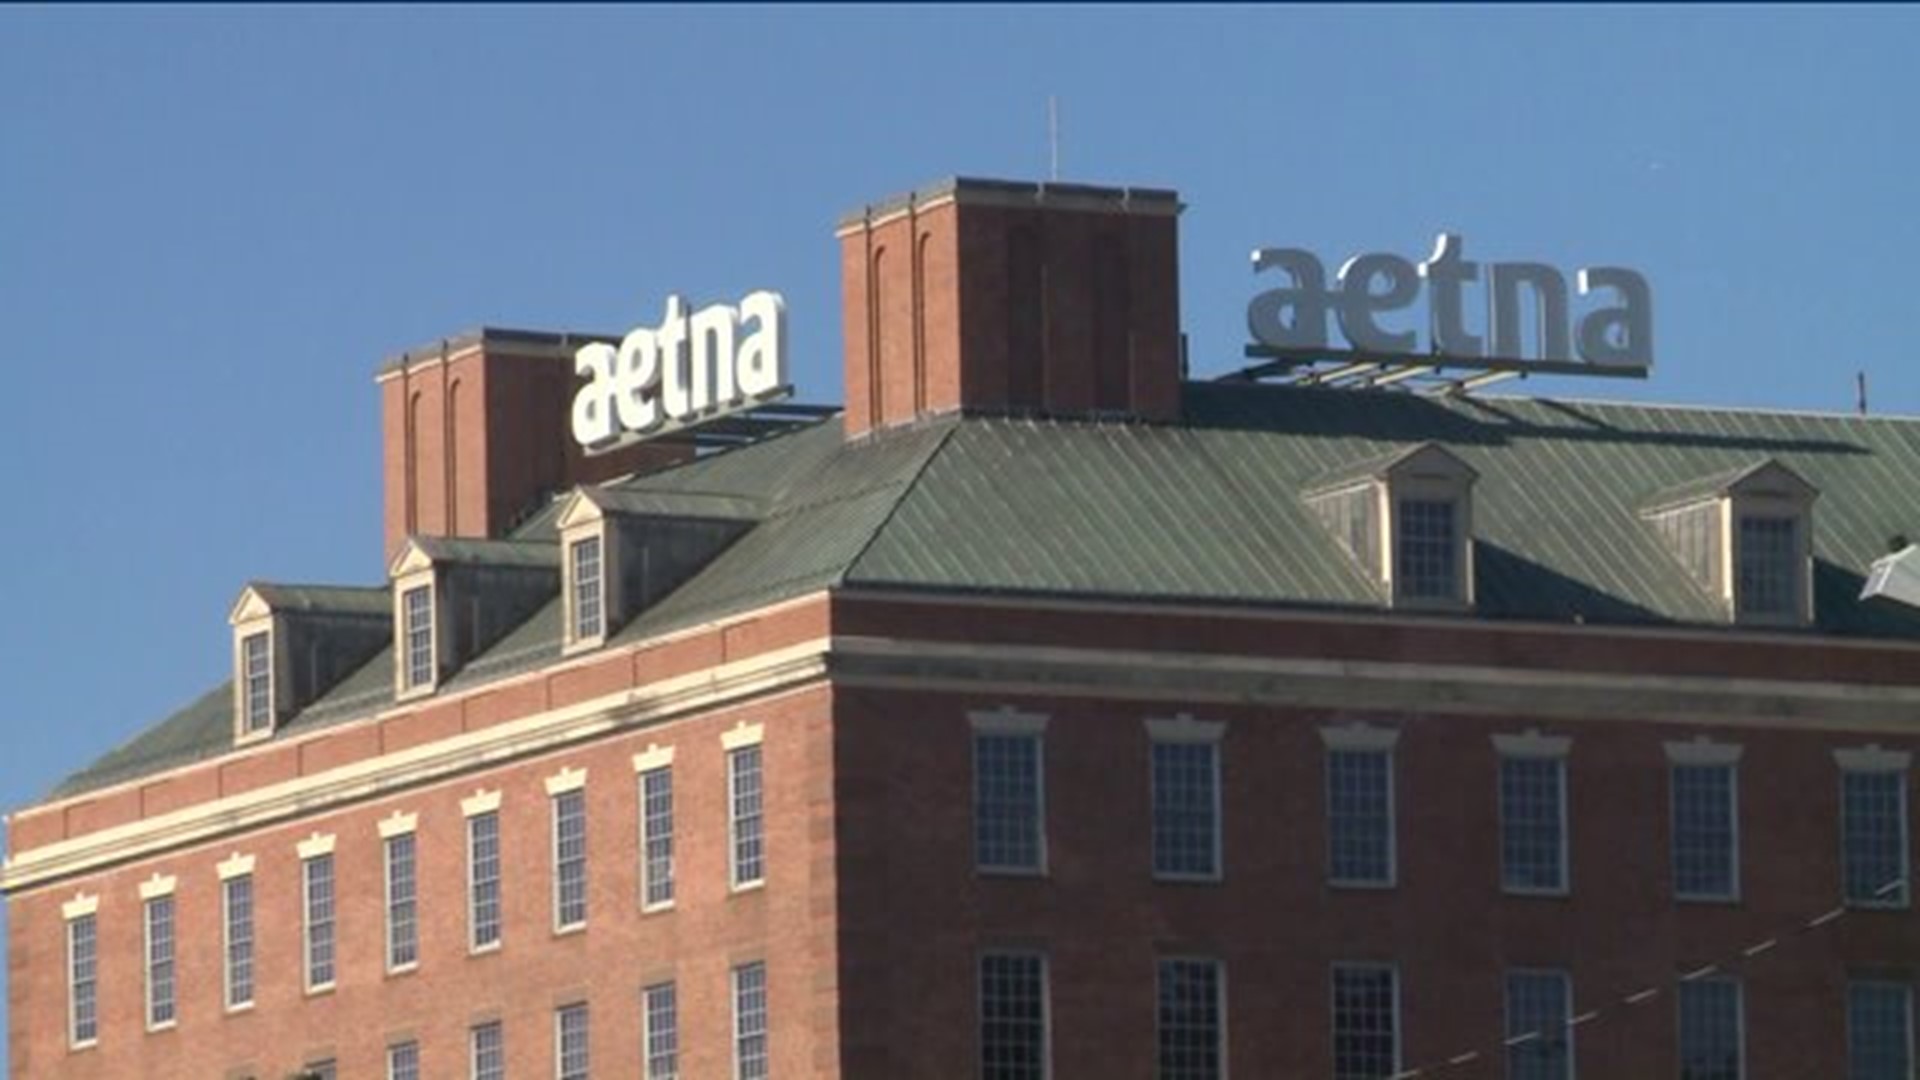 Could Aetna leave Hartford?